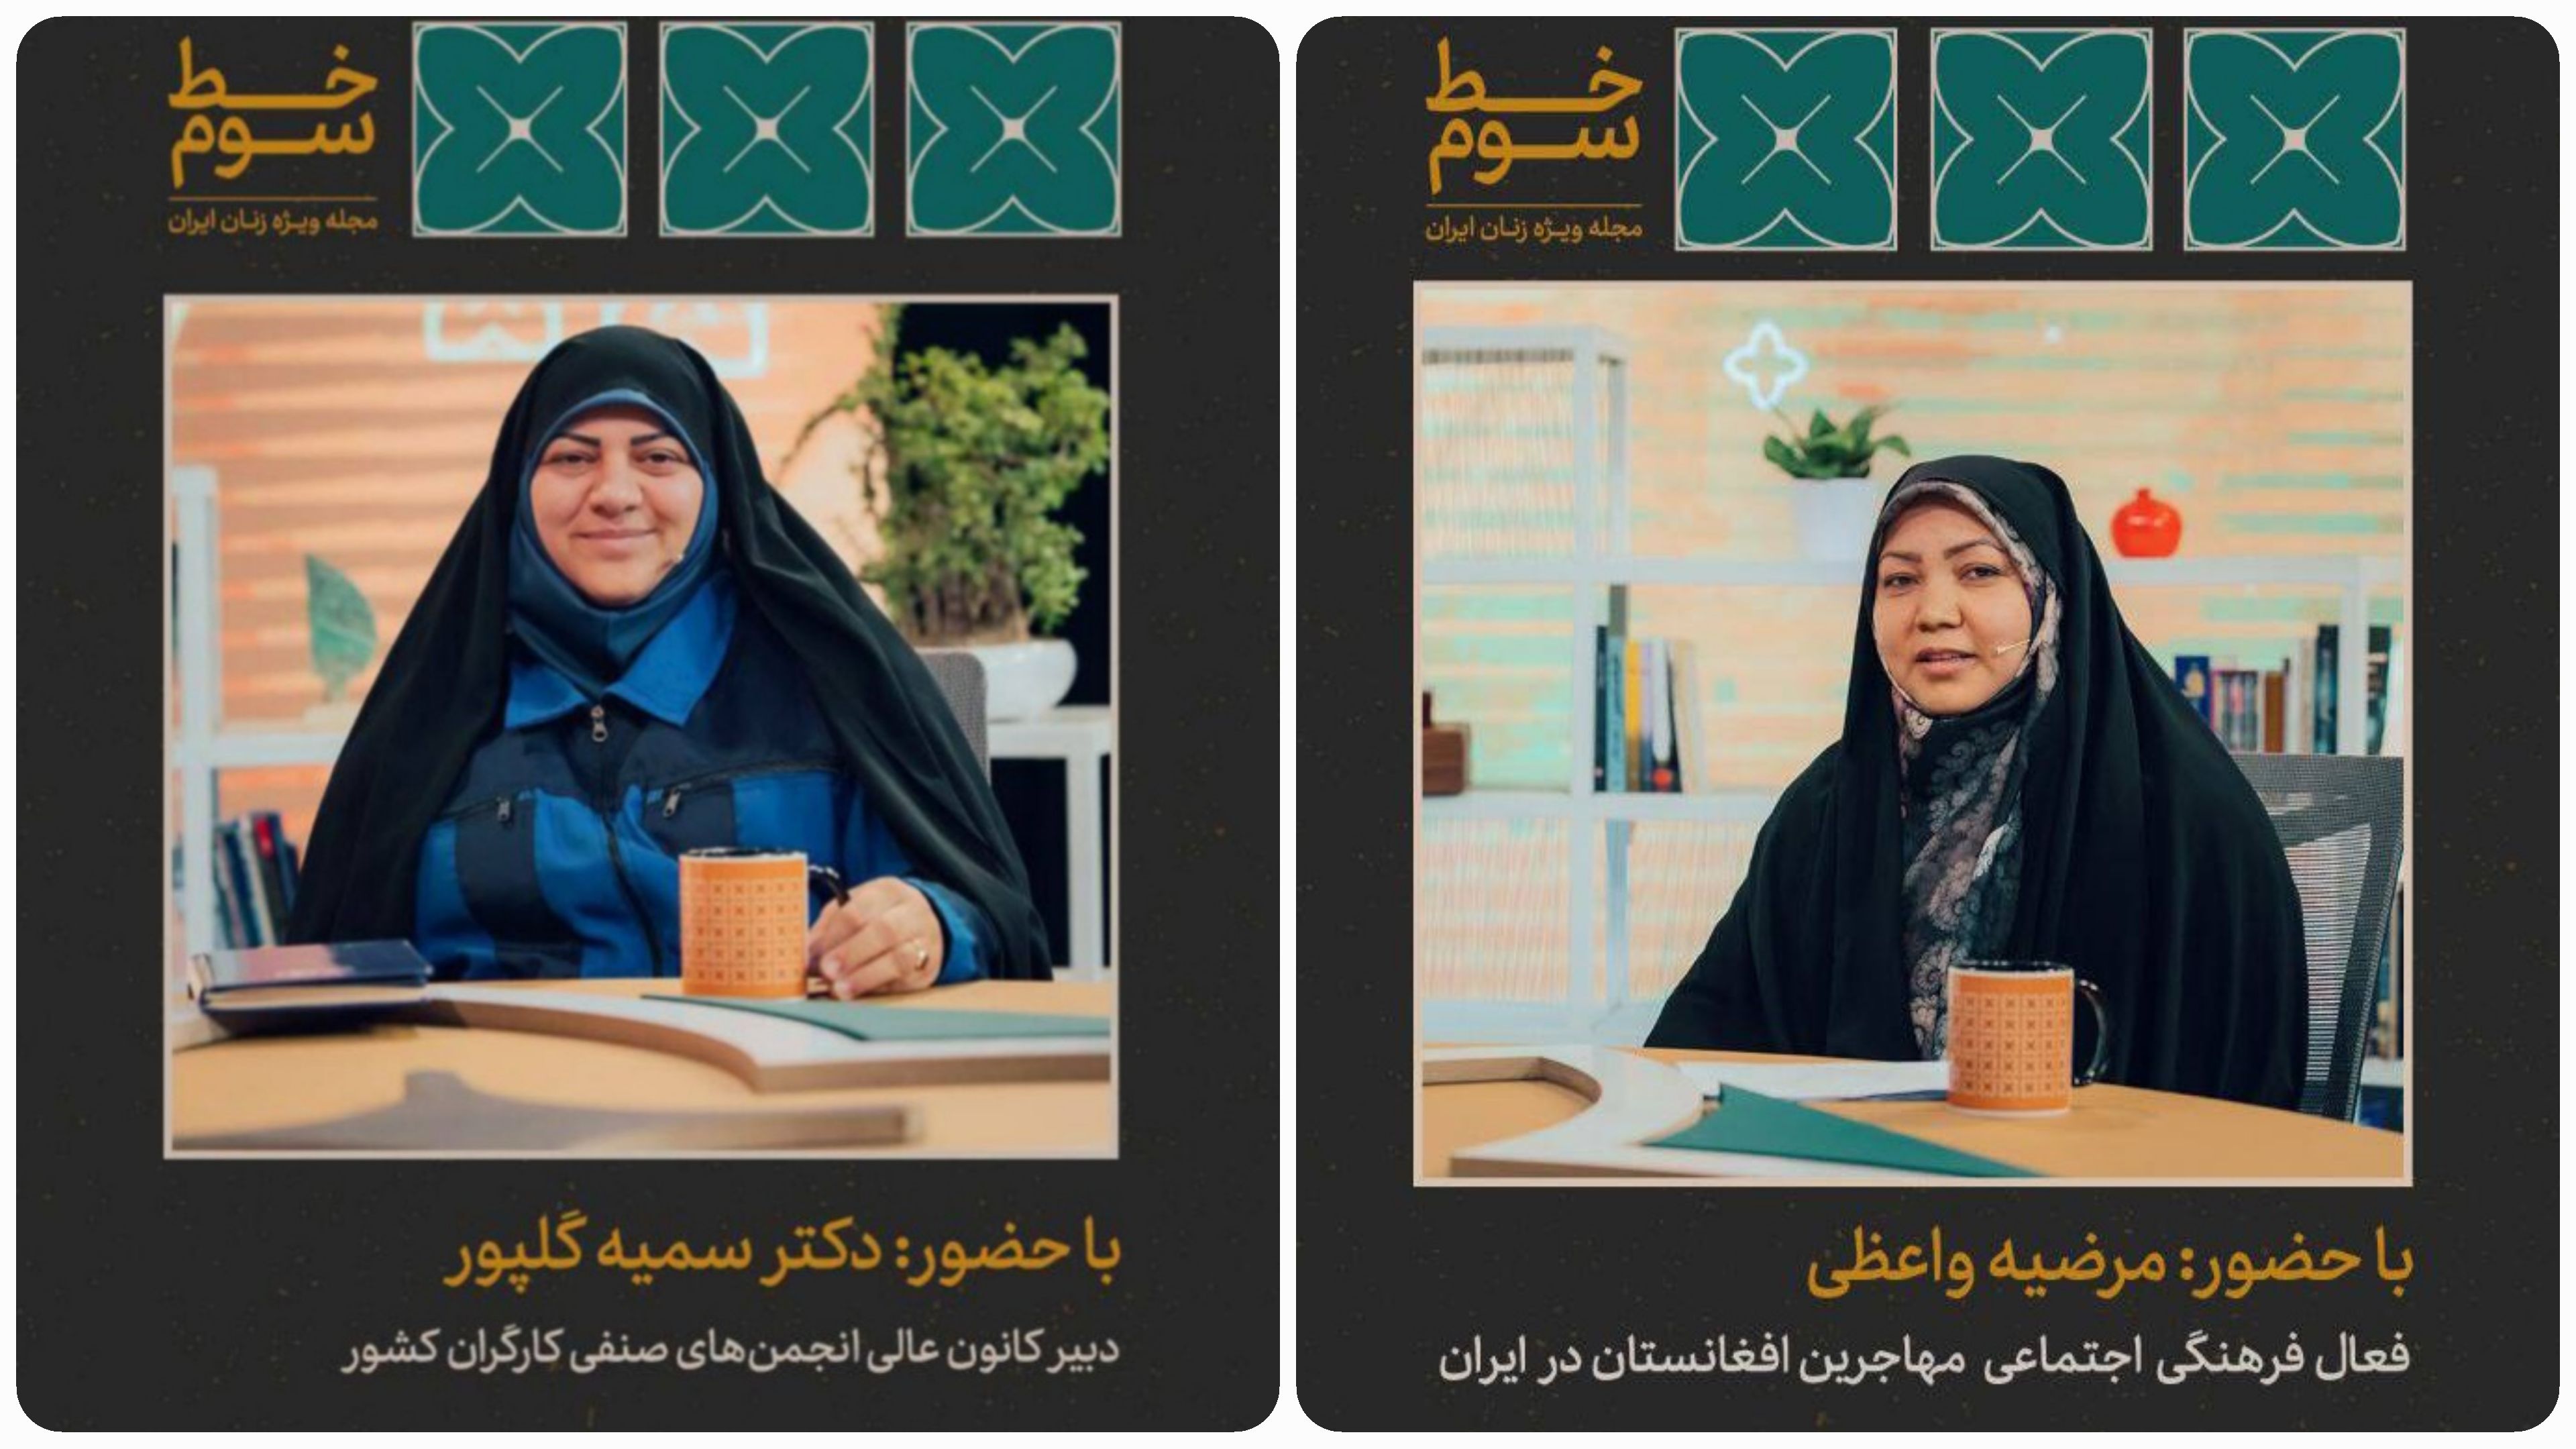 «زنان کارگر ایرانی» و «زندگی در سرزمین خودی» در مجله خط سوم